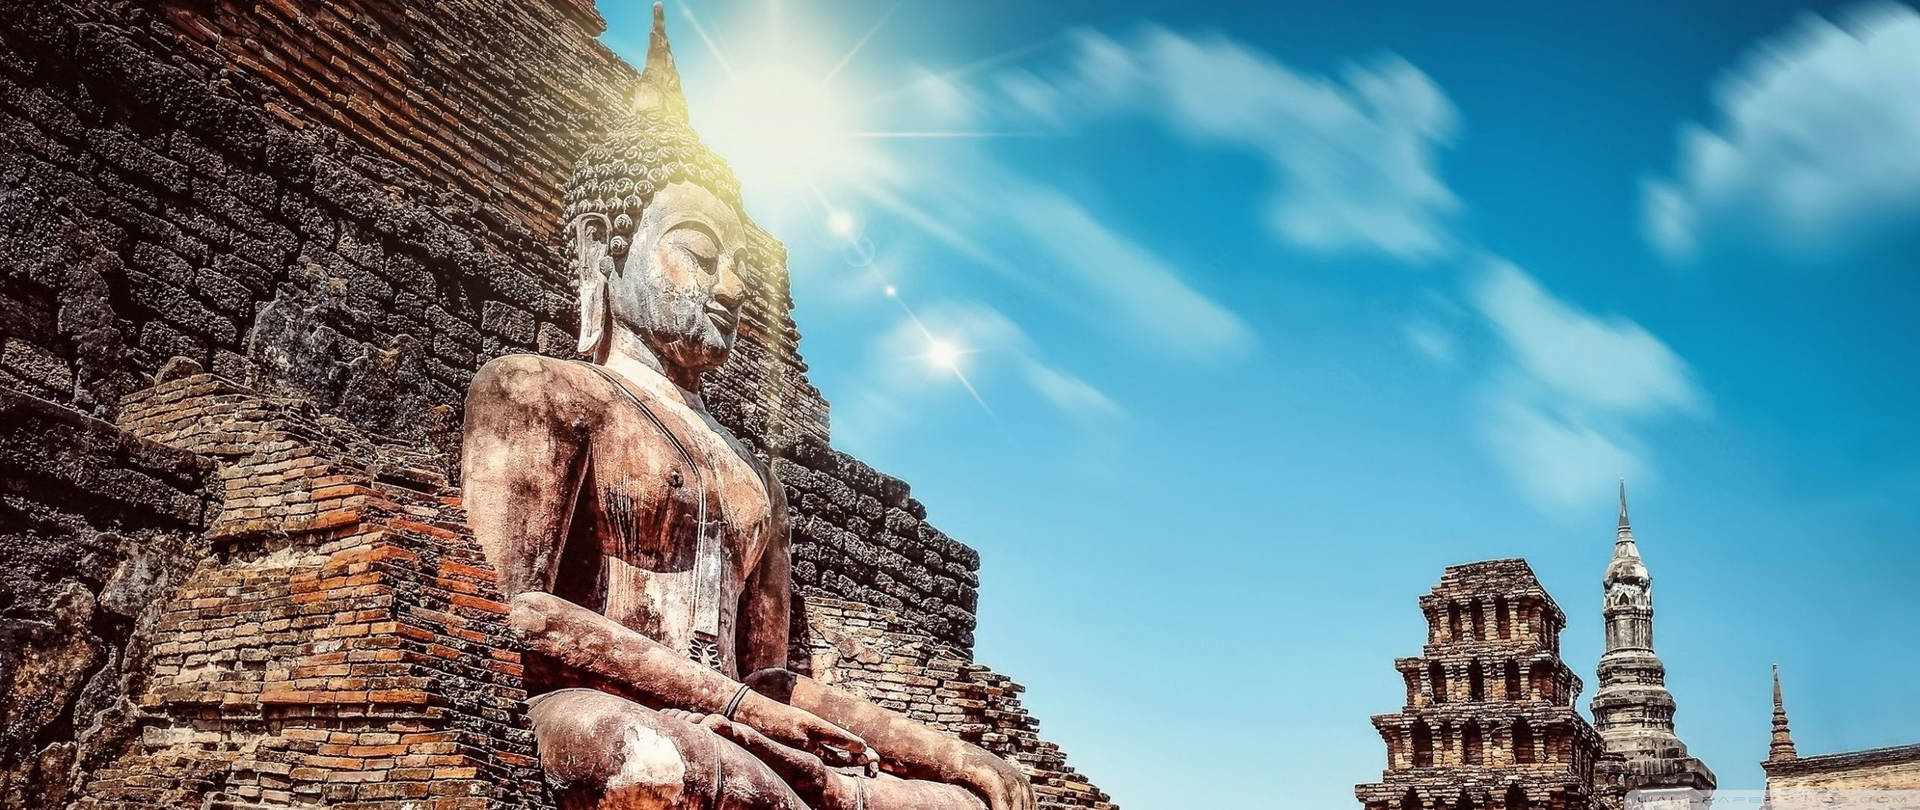 Buddha Statue Under Sun Background